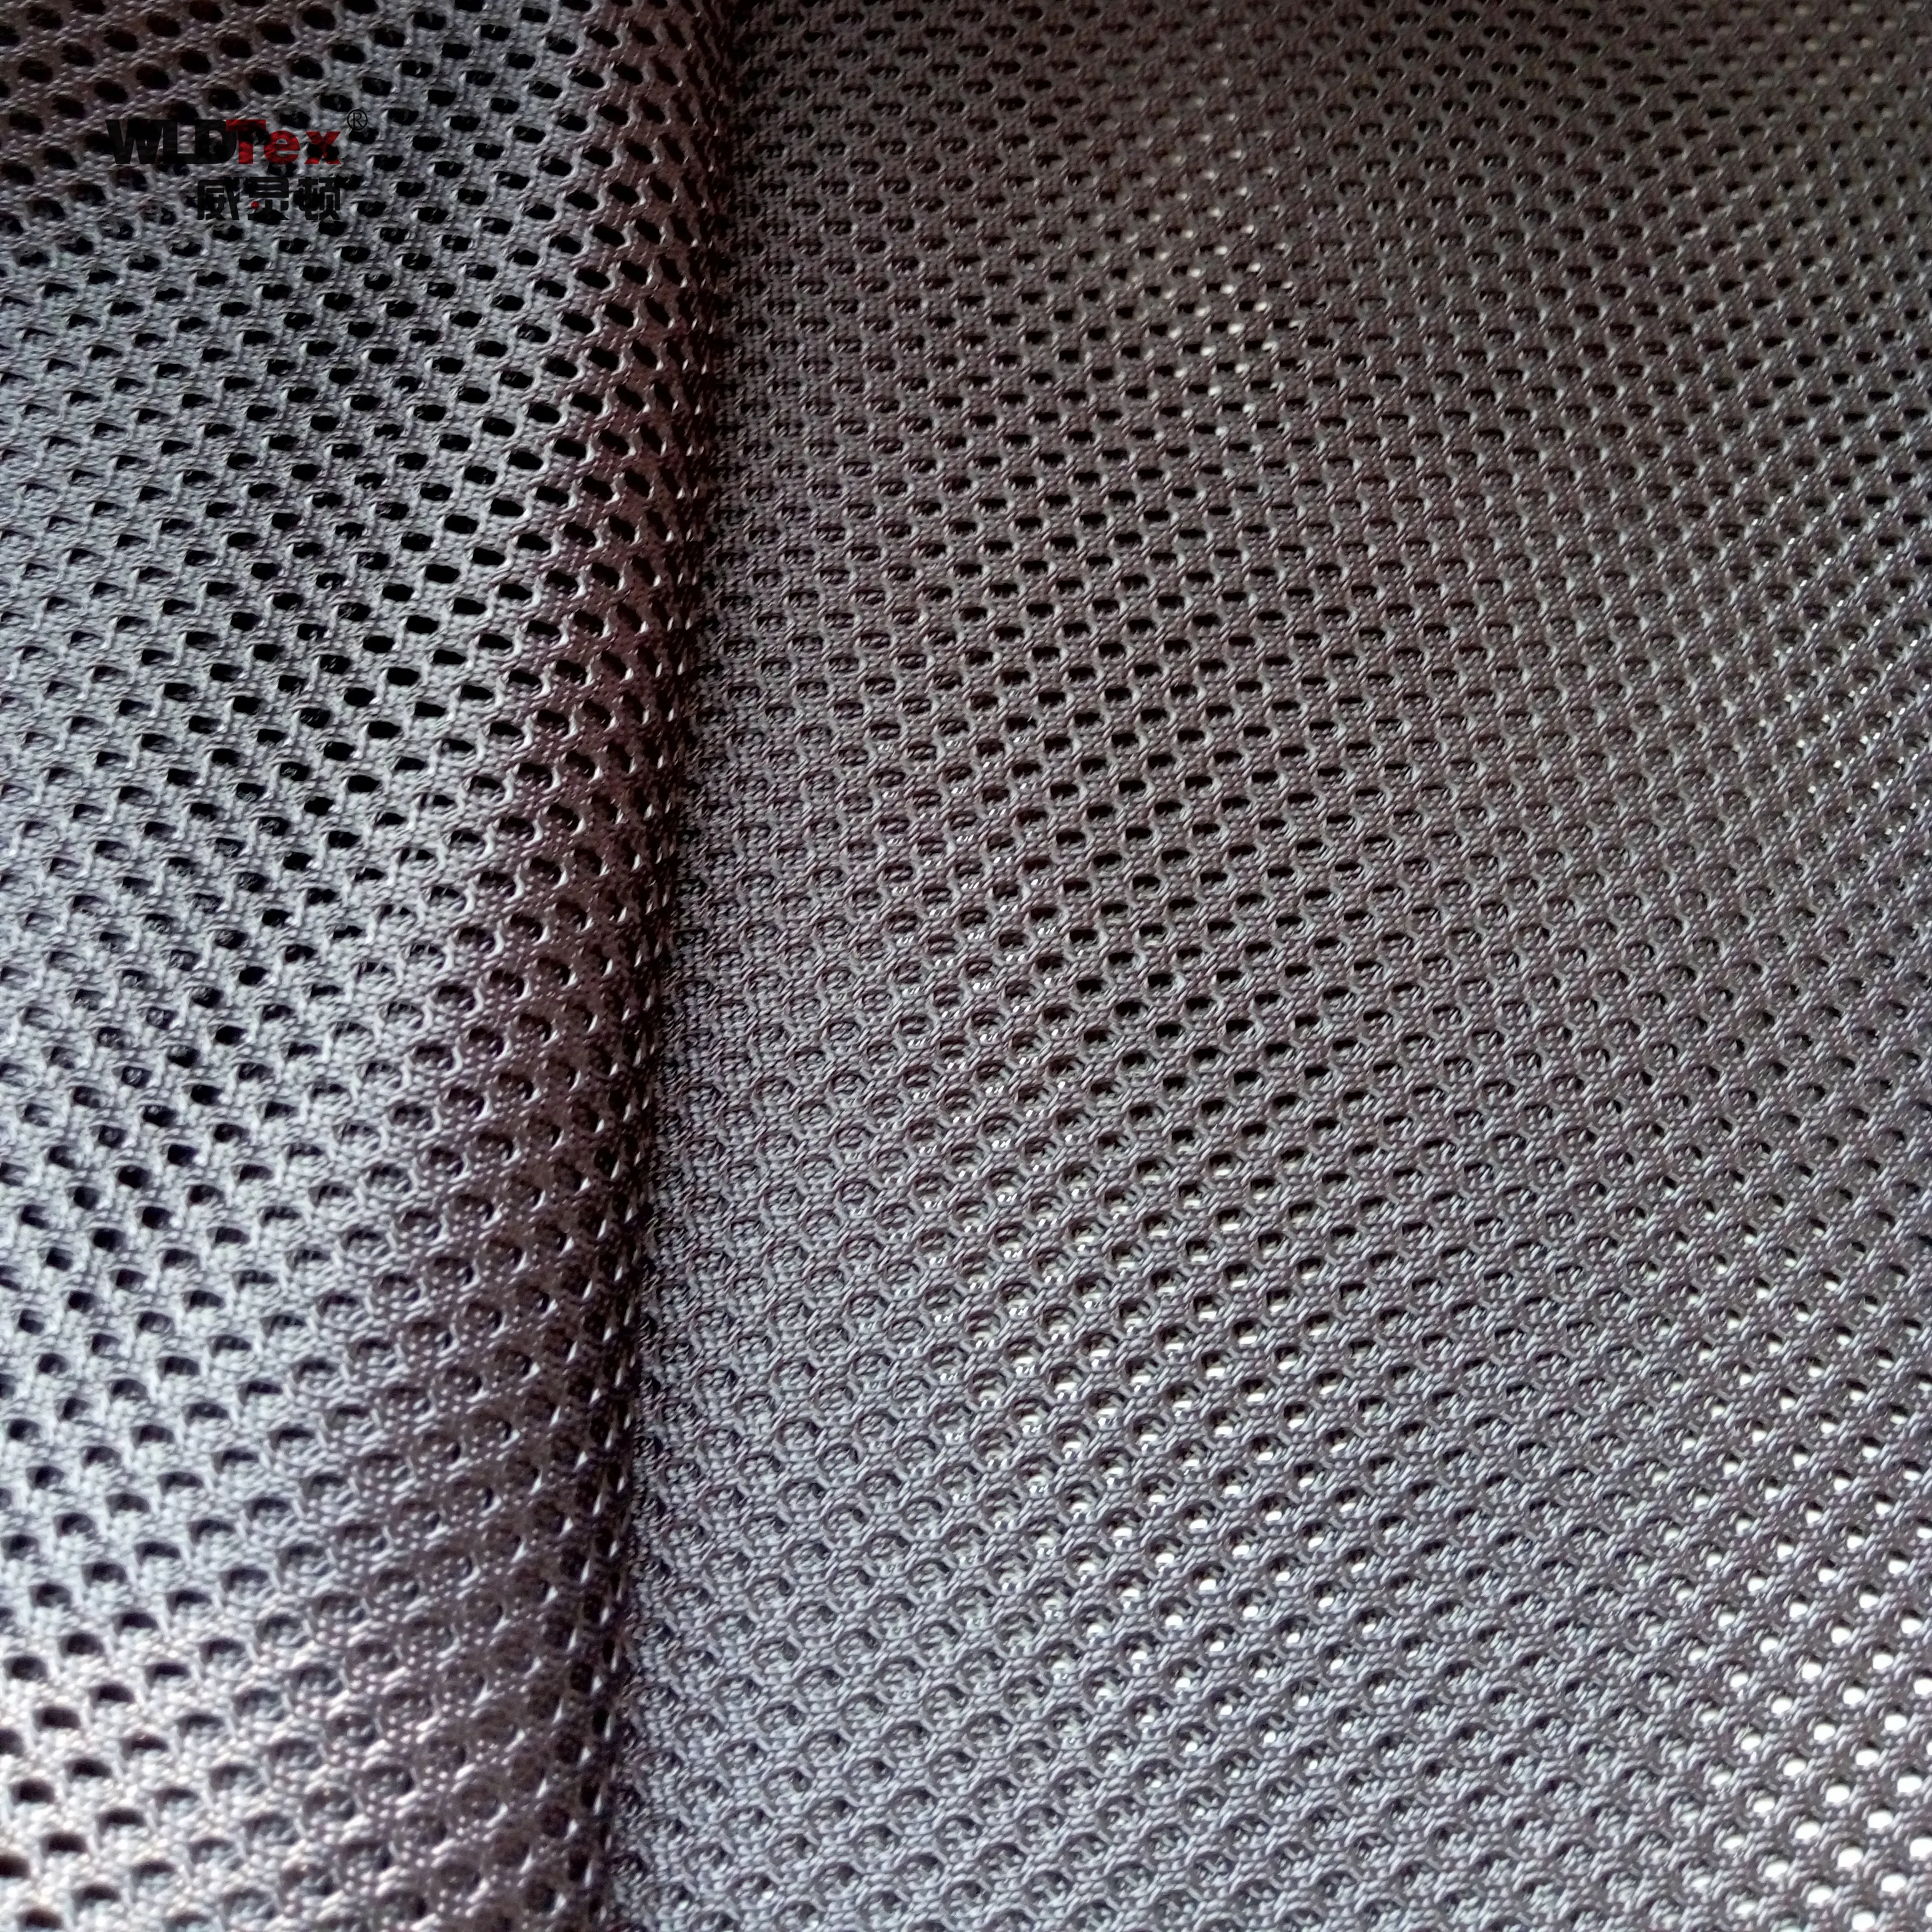 where to buy mesh fabric